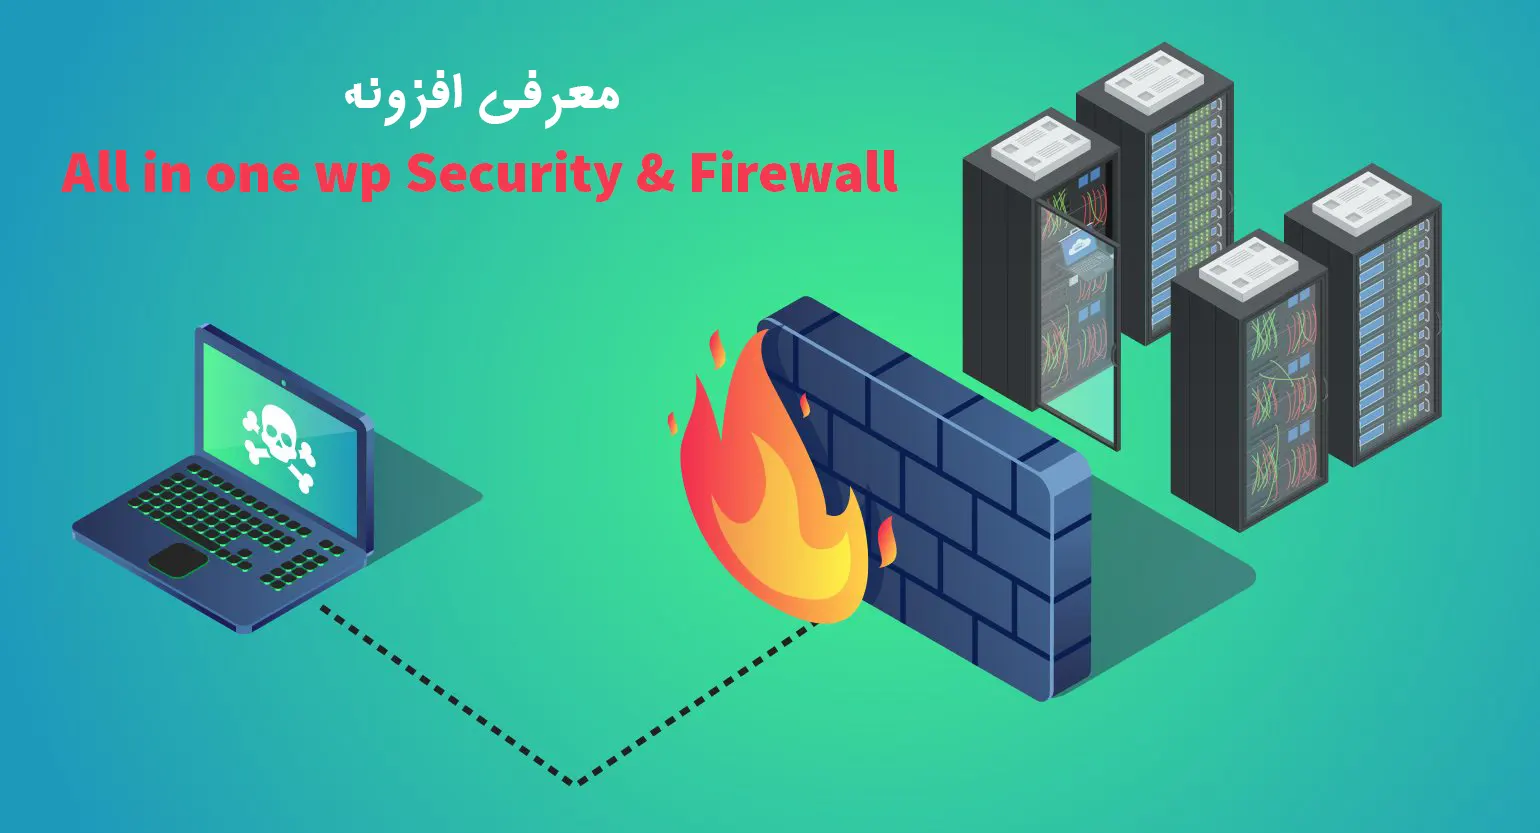 معرفی افزونه All in one wp Security & Firewall